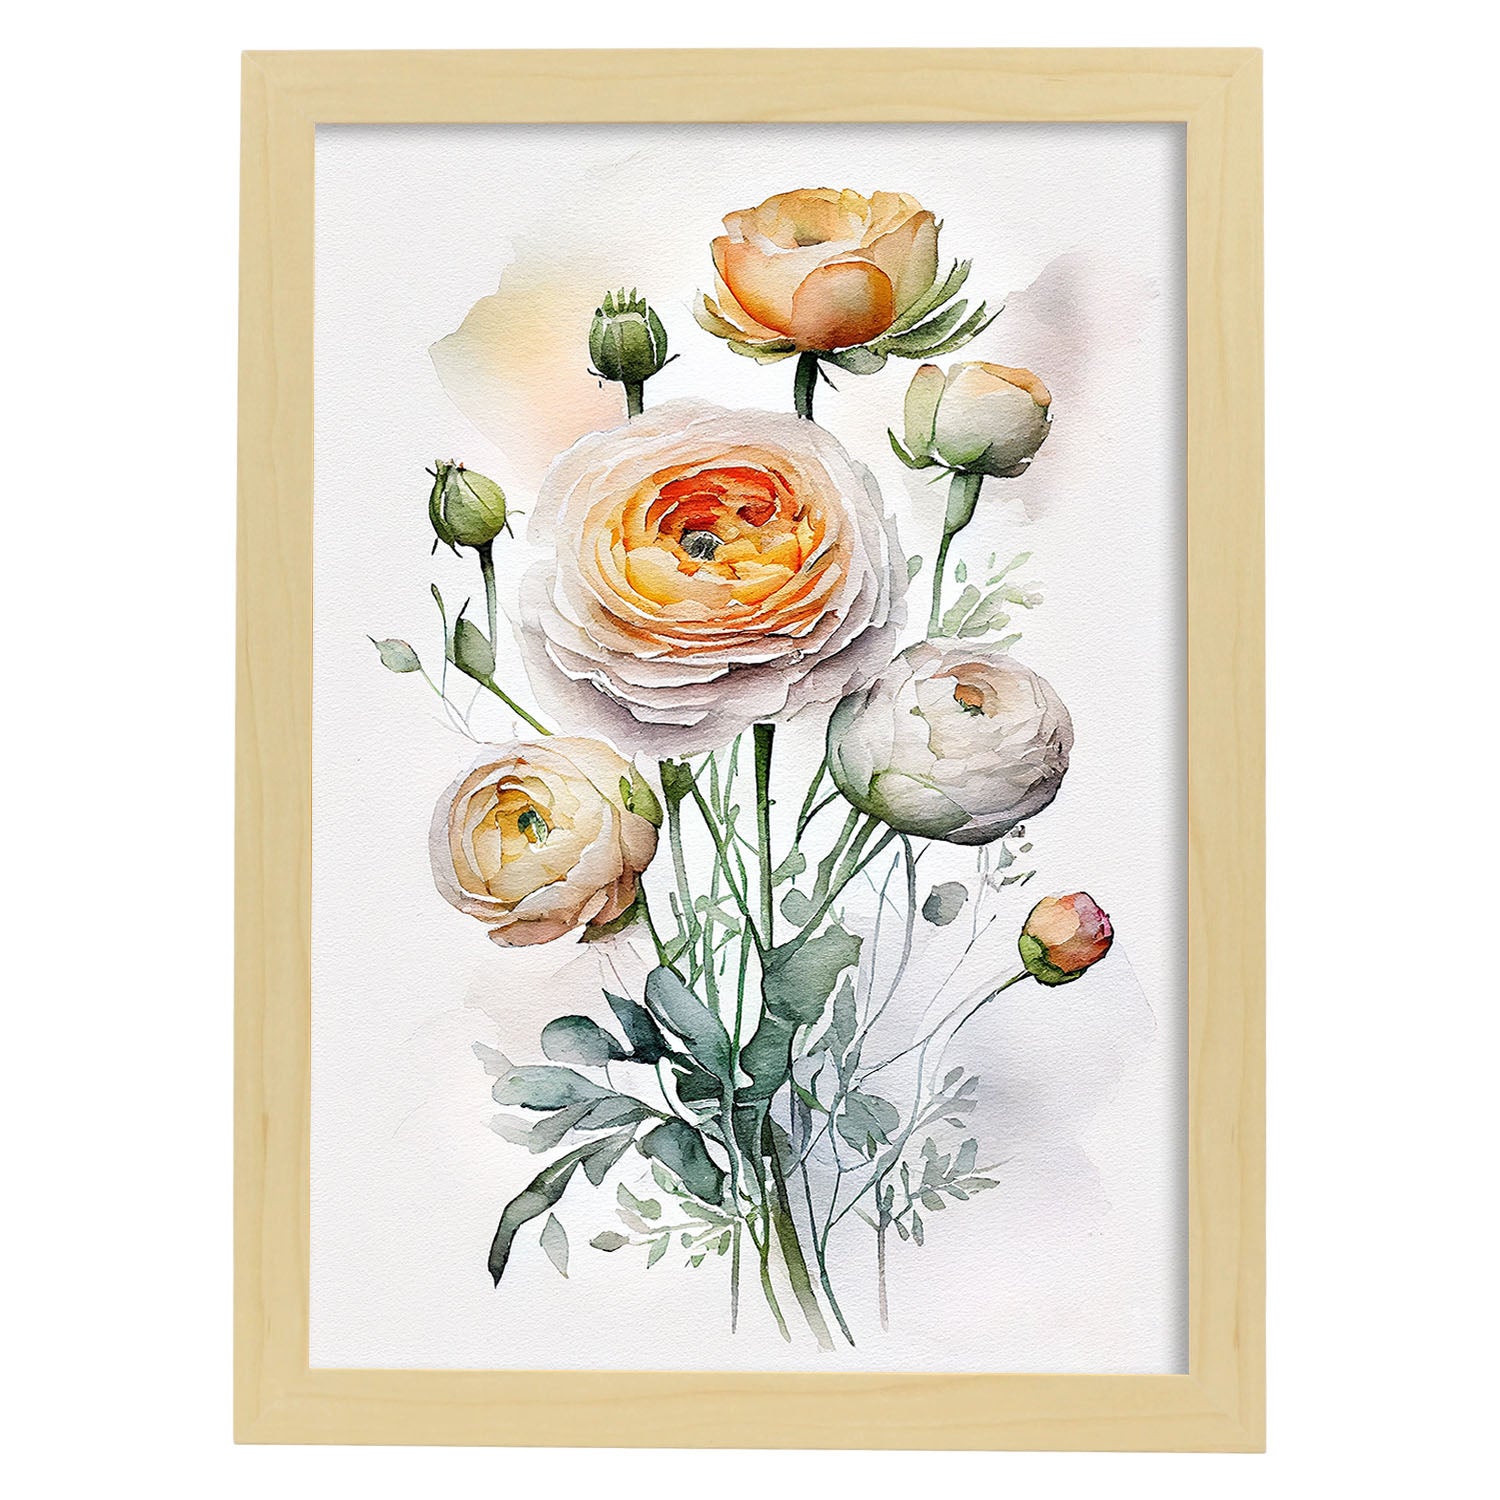 Nacnic Rododendro Poster In Stile Acquerello Fiore Pianta Botanica Sfondo  Bianco Stampe Artistiche Modello 1 A4 Con Cornici In Legno Chiaro